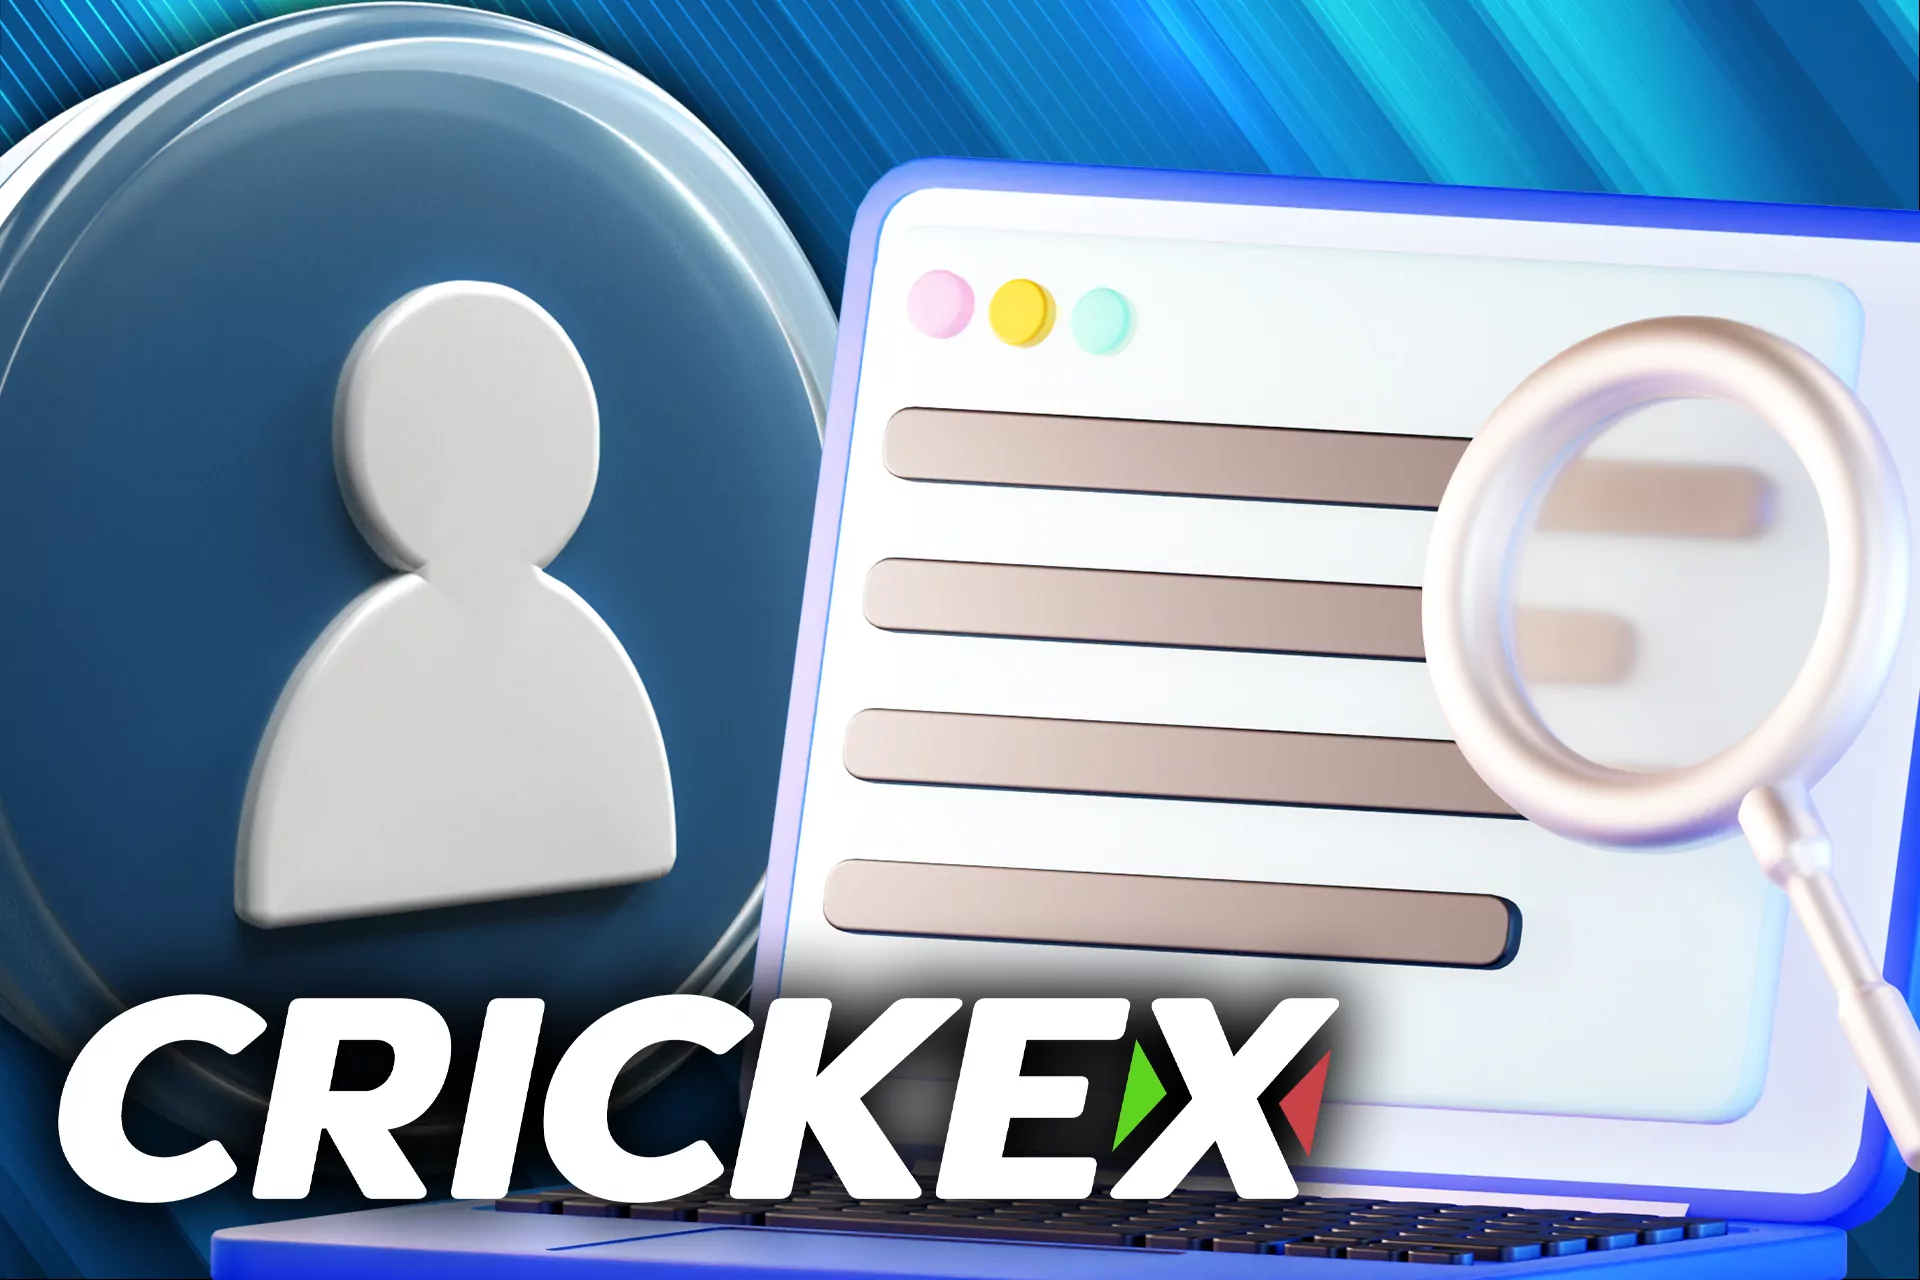 Crickex collect personal data.